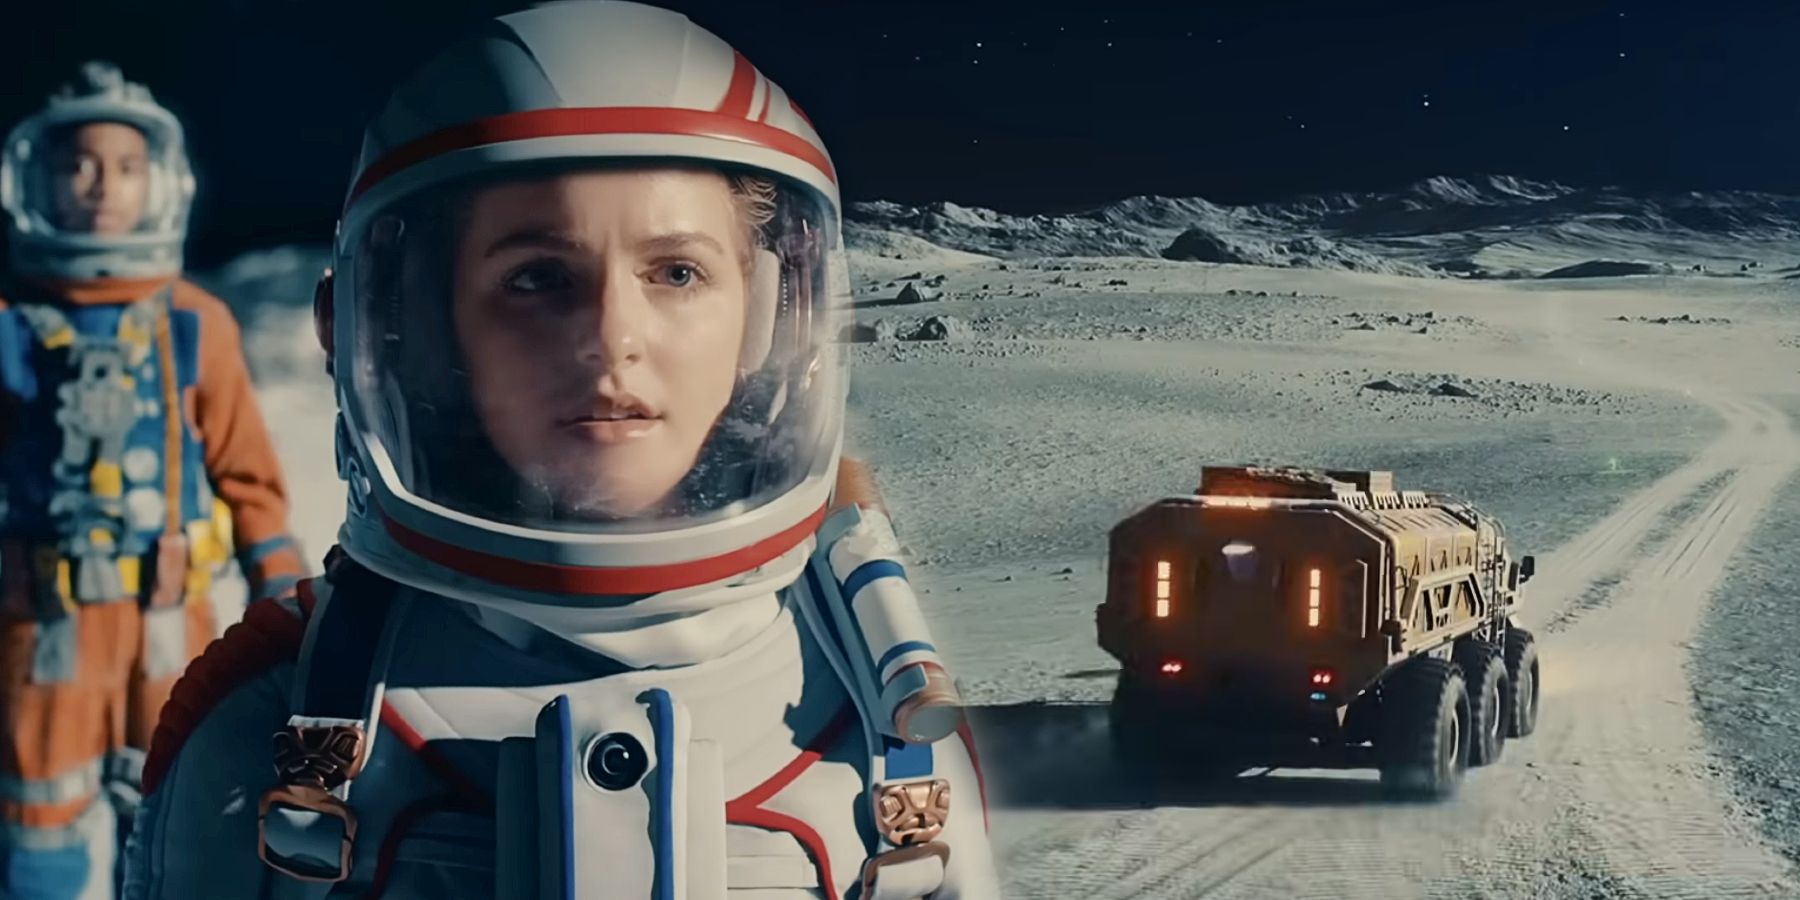 Addison interpretado por Mckenna Grace con un traje espacial en Crater